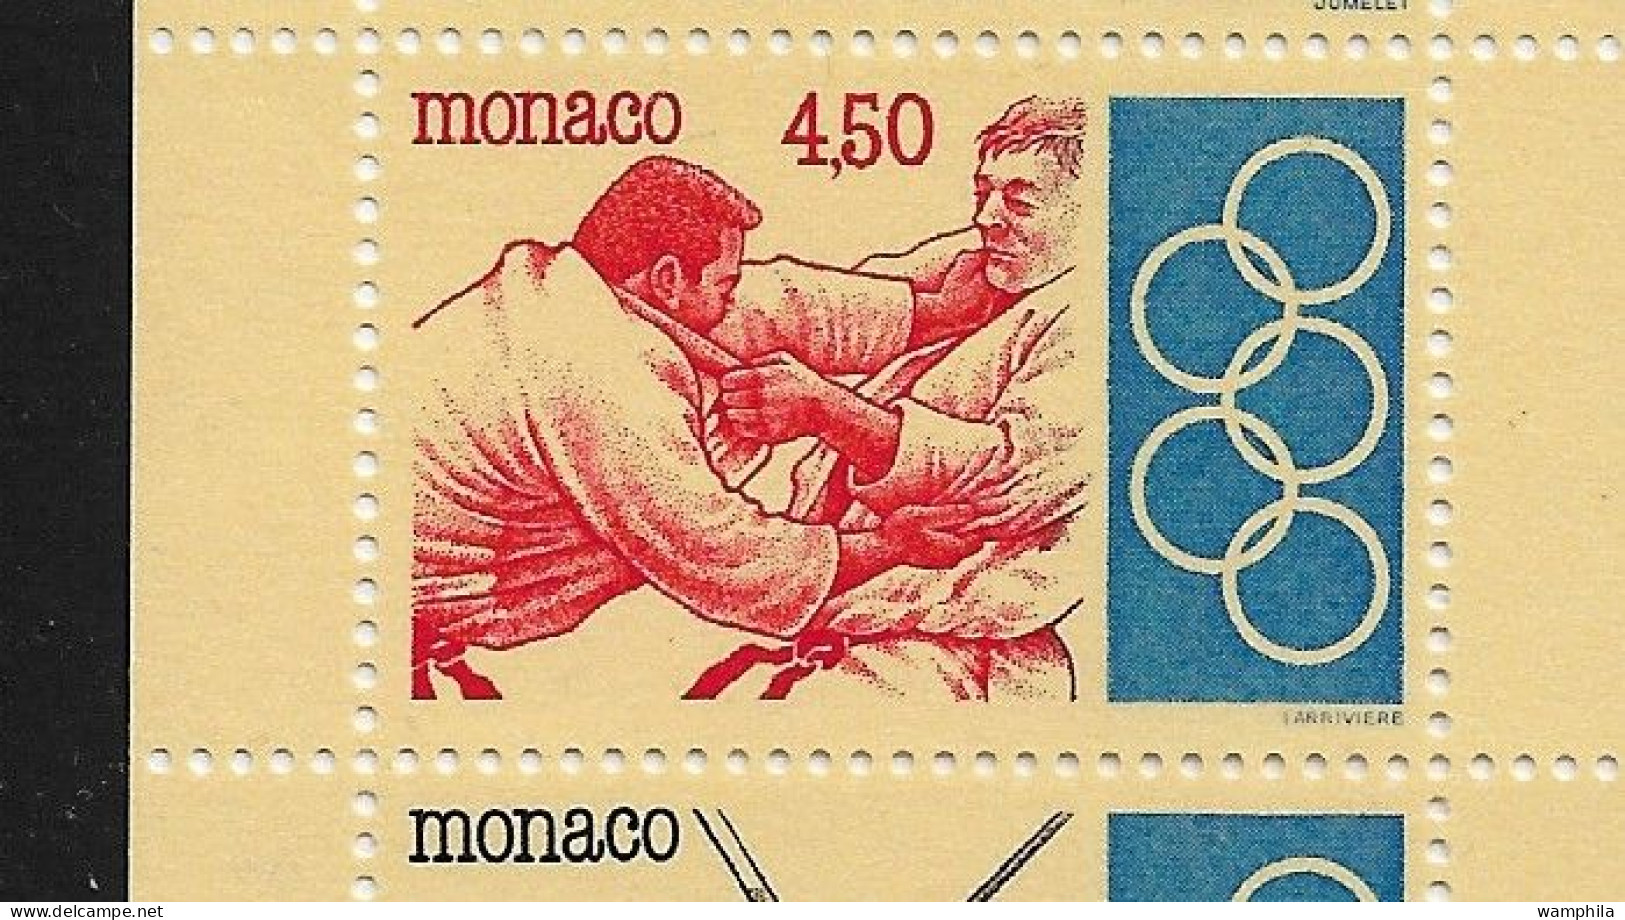 Monaco 1993. Carnet N°11, J.O .Anneaux, Judo, Escrime, Haies, Tir à L'arc, Haltérophilie. - Carnets